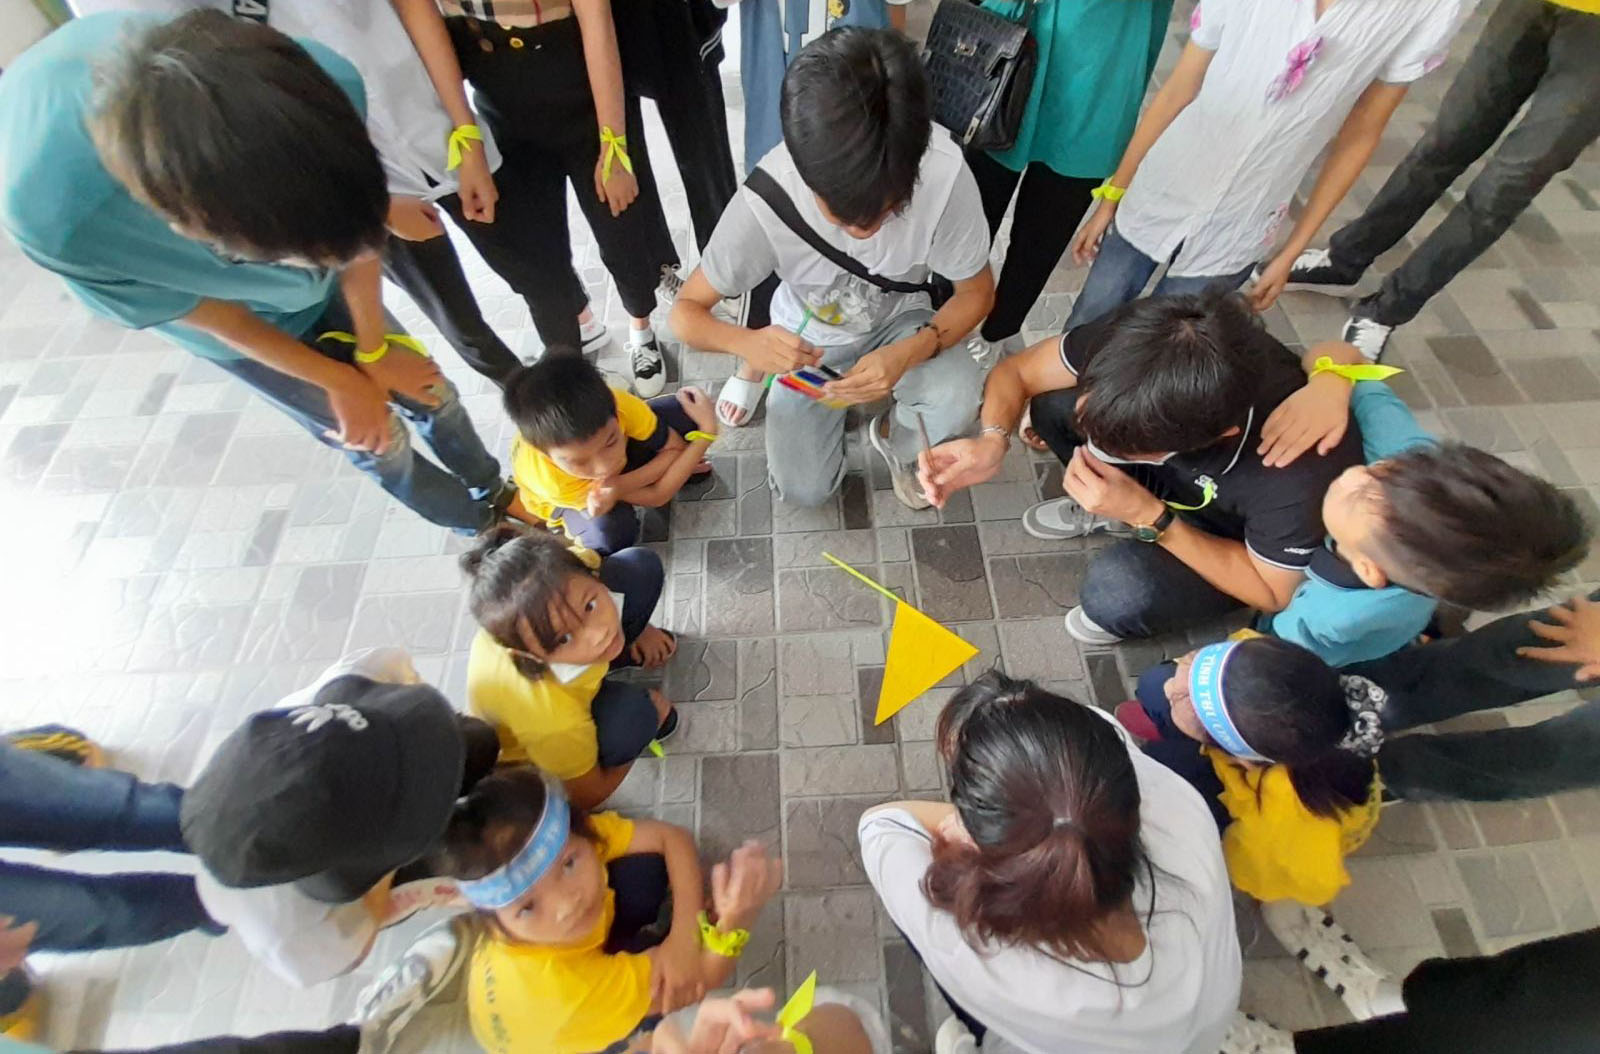 Caritas Hải Phòng: Ngày gặp gỡ, giao lưu, hướng nghiệp cho các em học sinh nghèo, Hè 2022